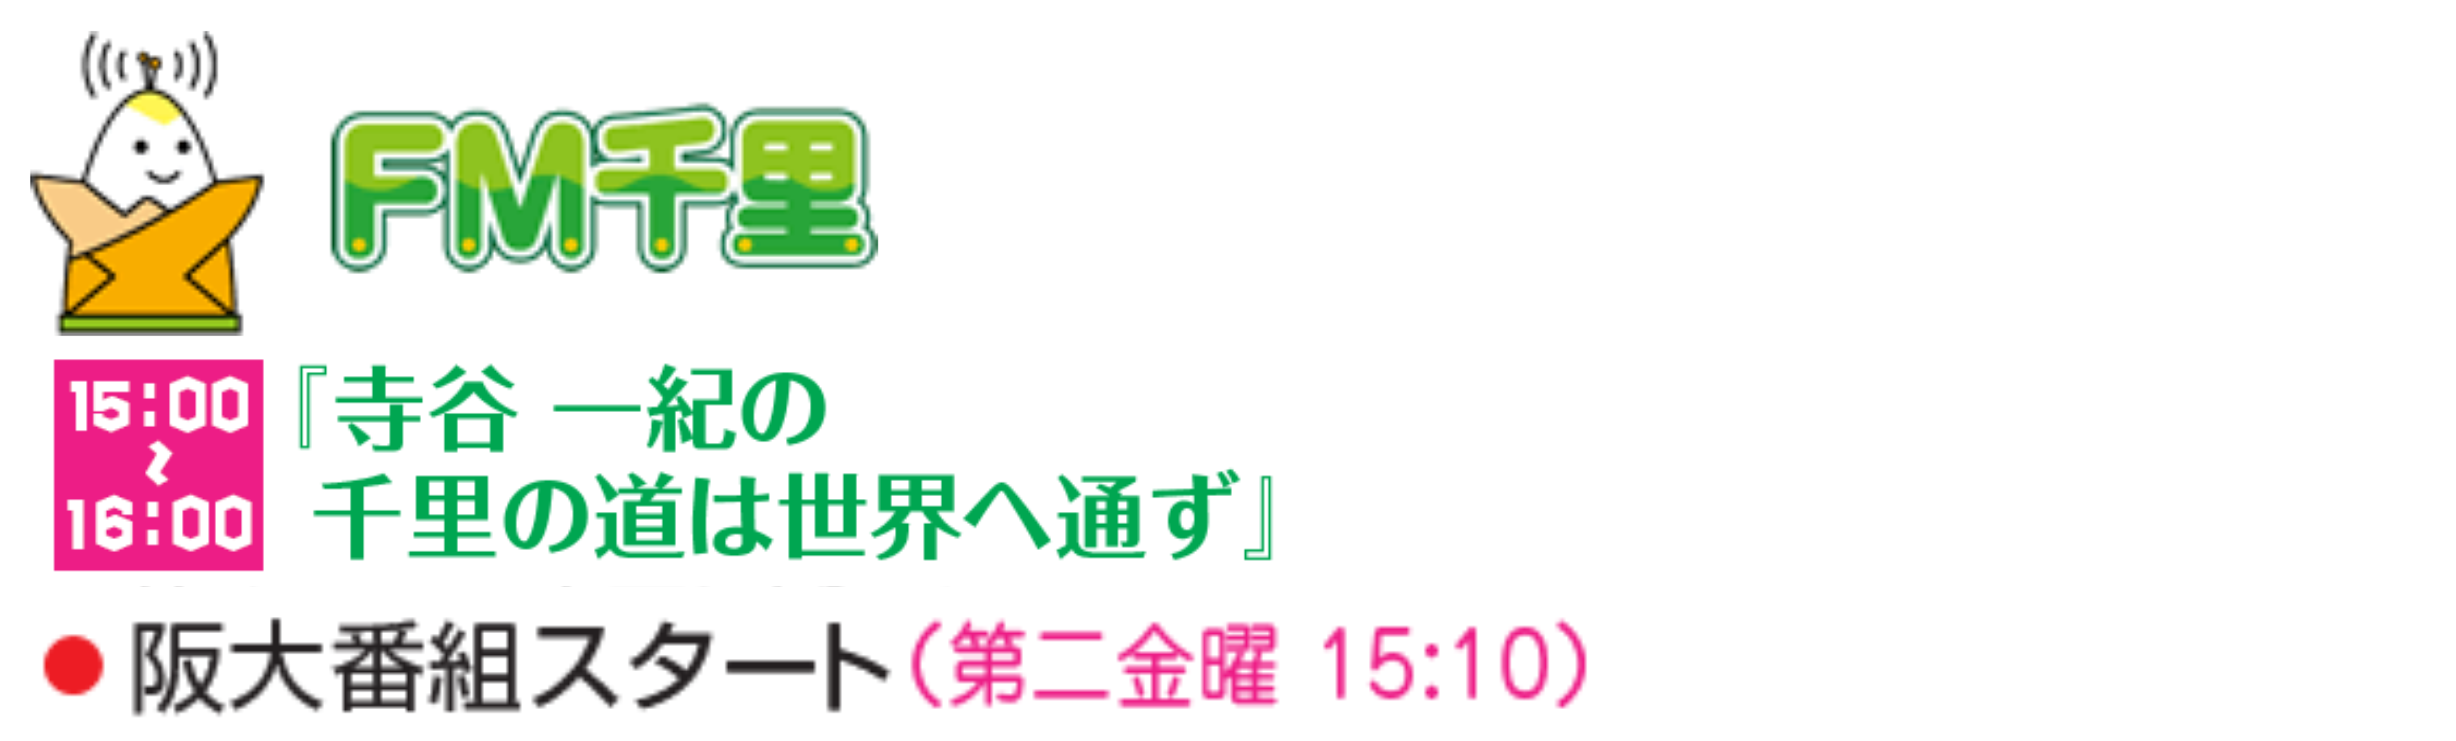 ＦＭ千里で今月から第2金曜日に特別番組「阪大万博」の放送が始まります（第1回放送は7月14日）